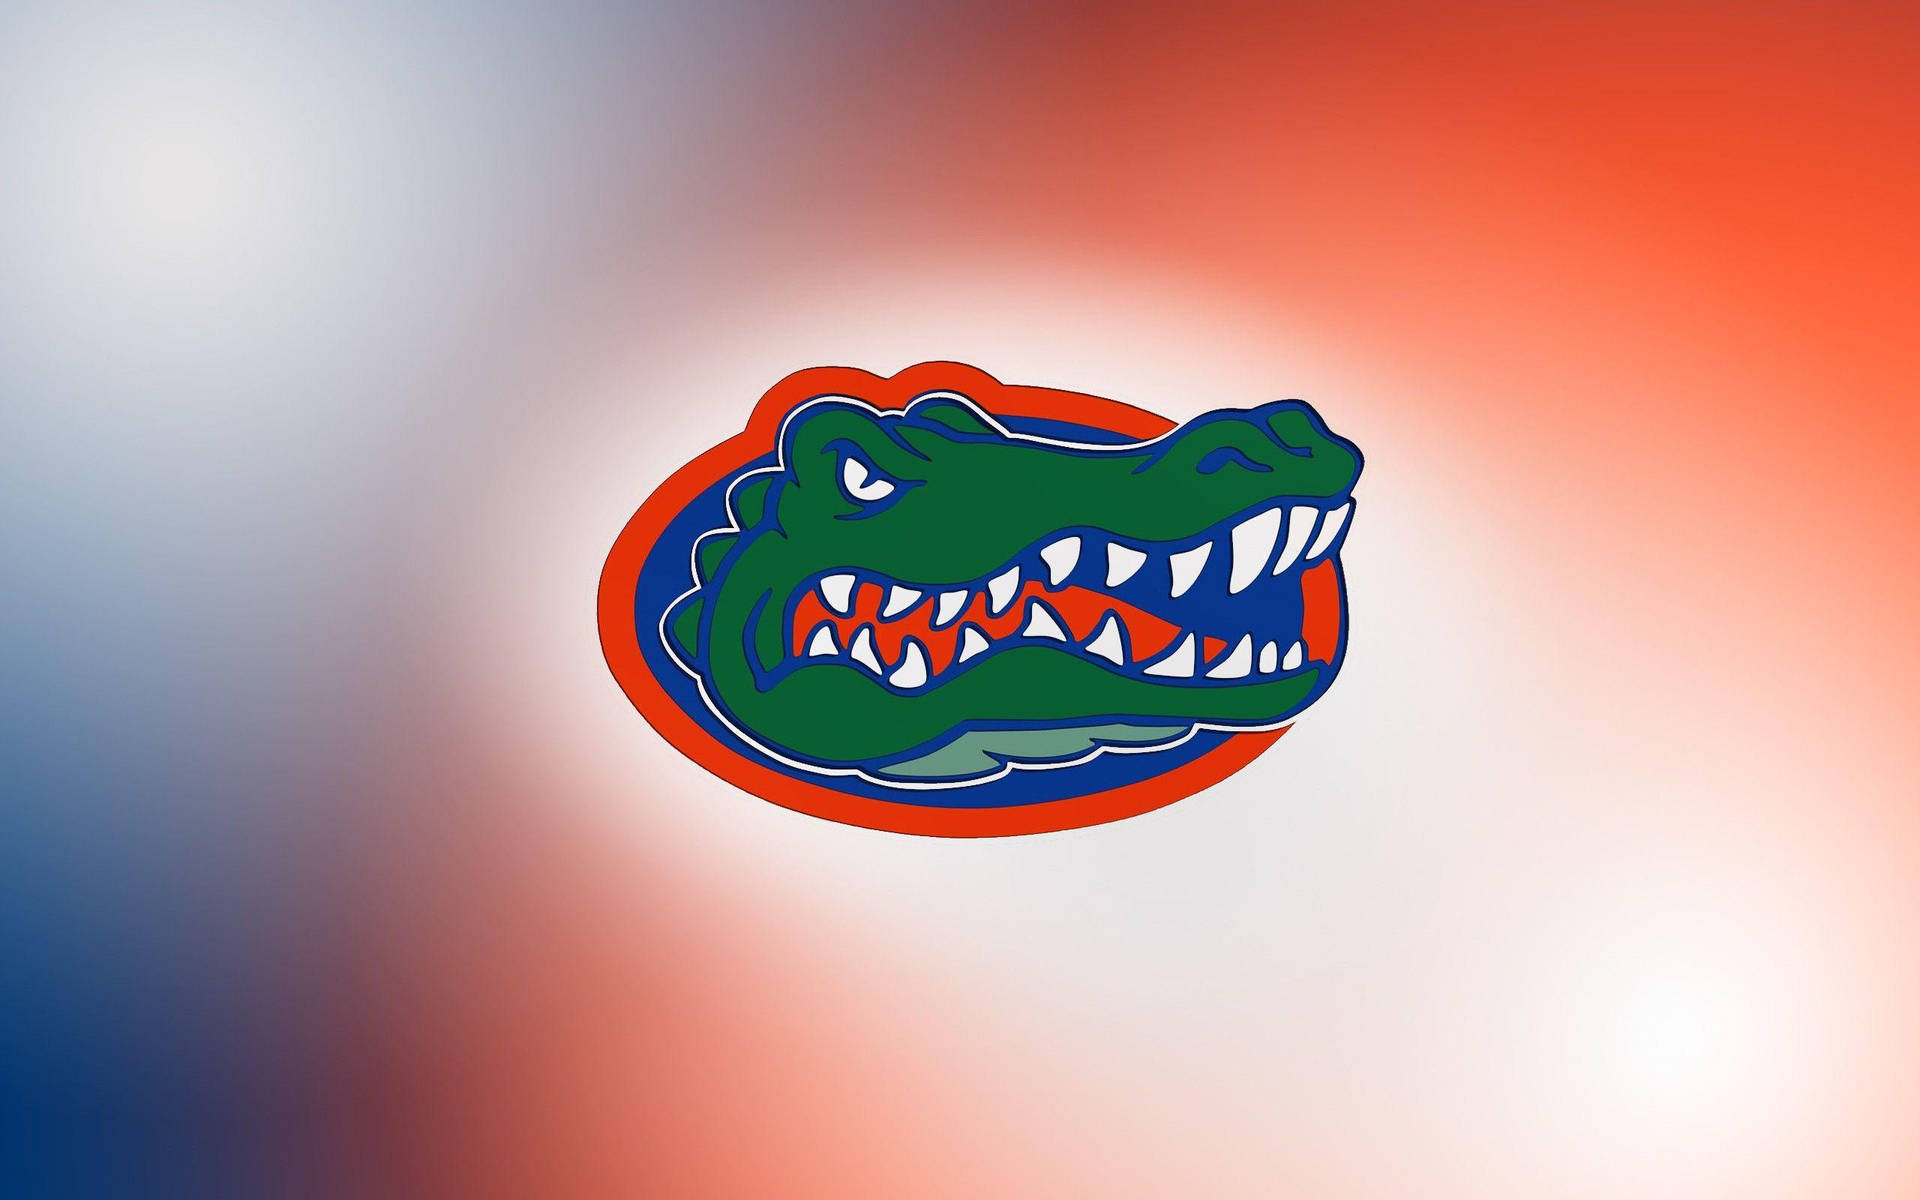 University Of Florida Gators Sports Aesthetic Background